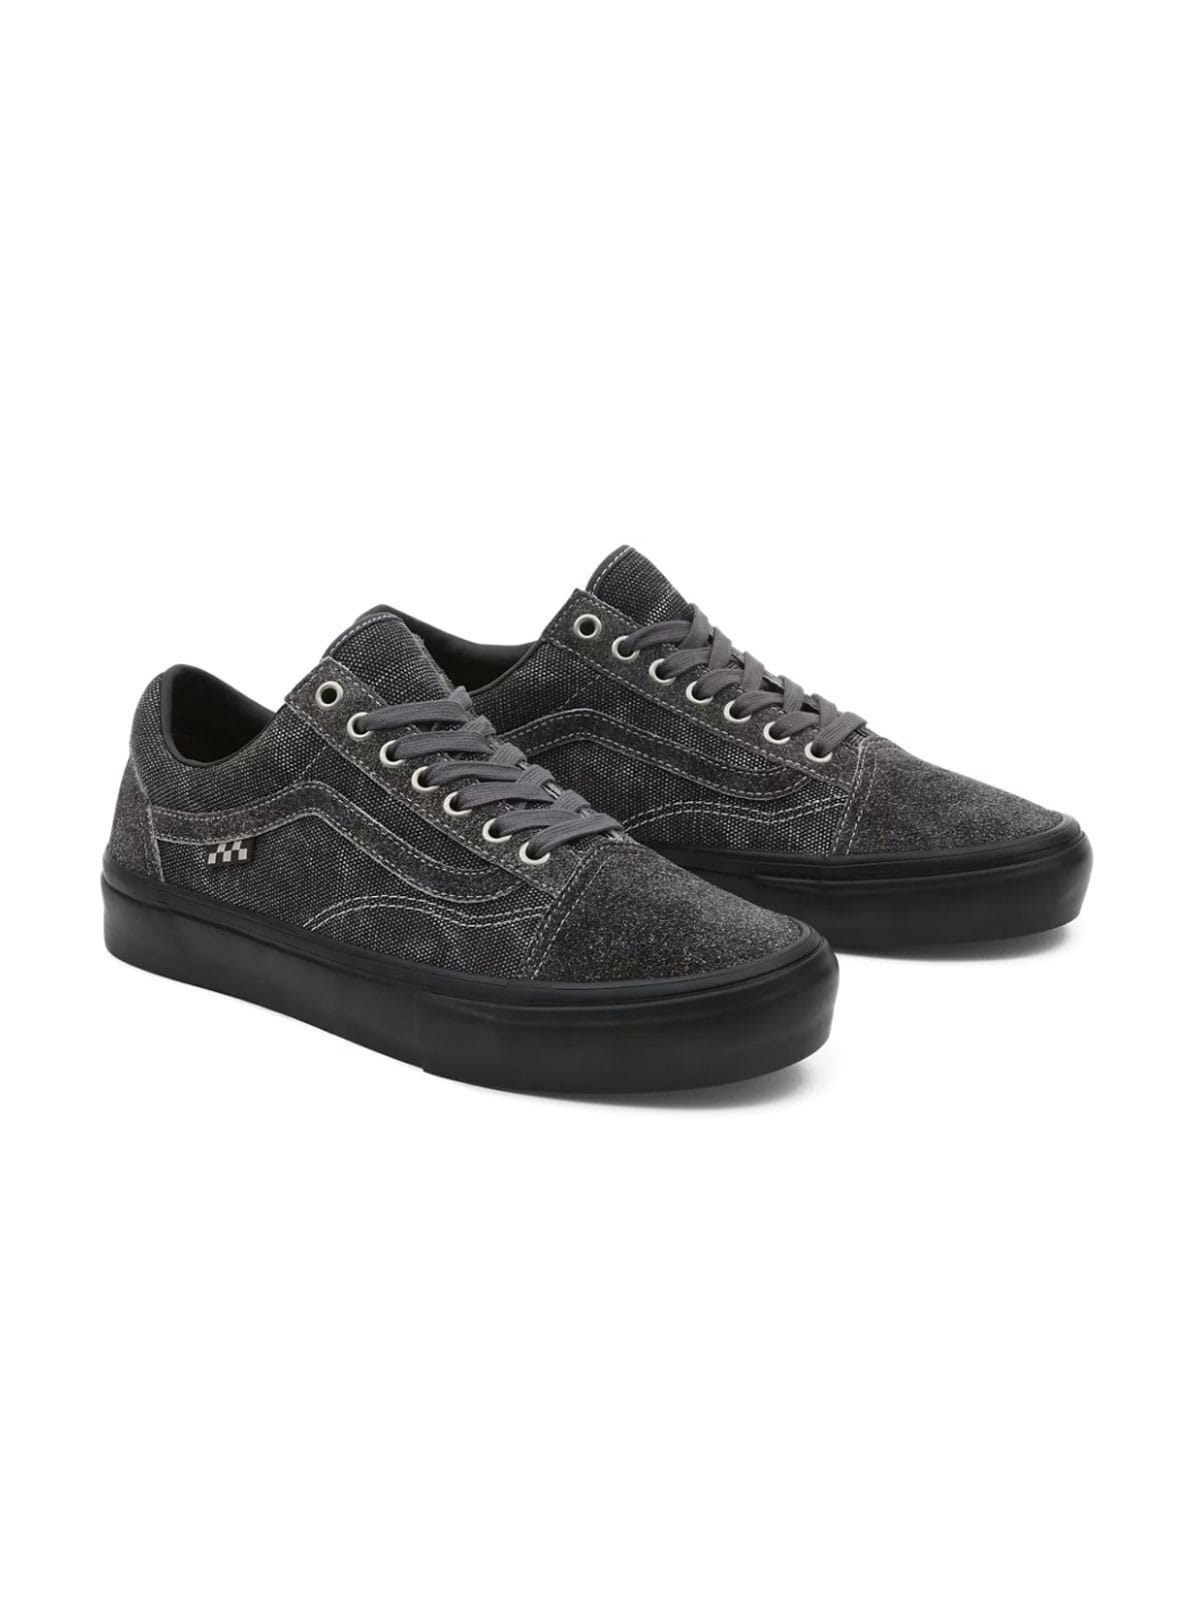 Vans X Quasi - Old Skool Shoes